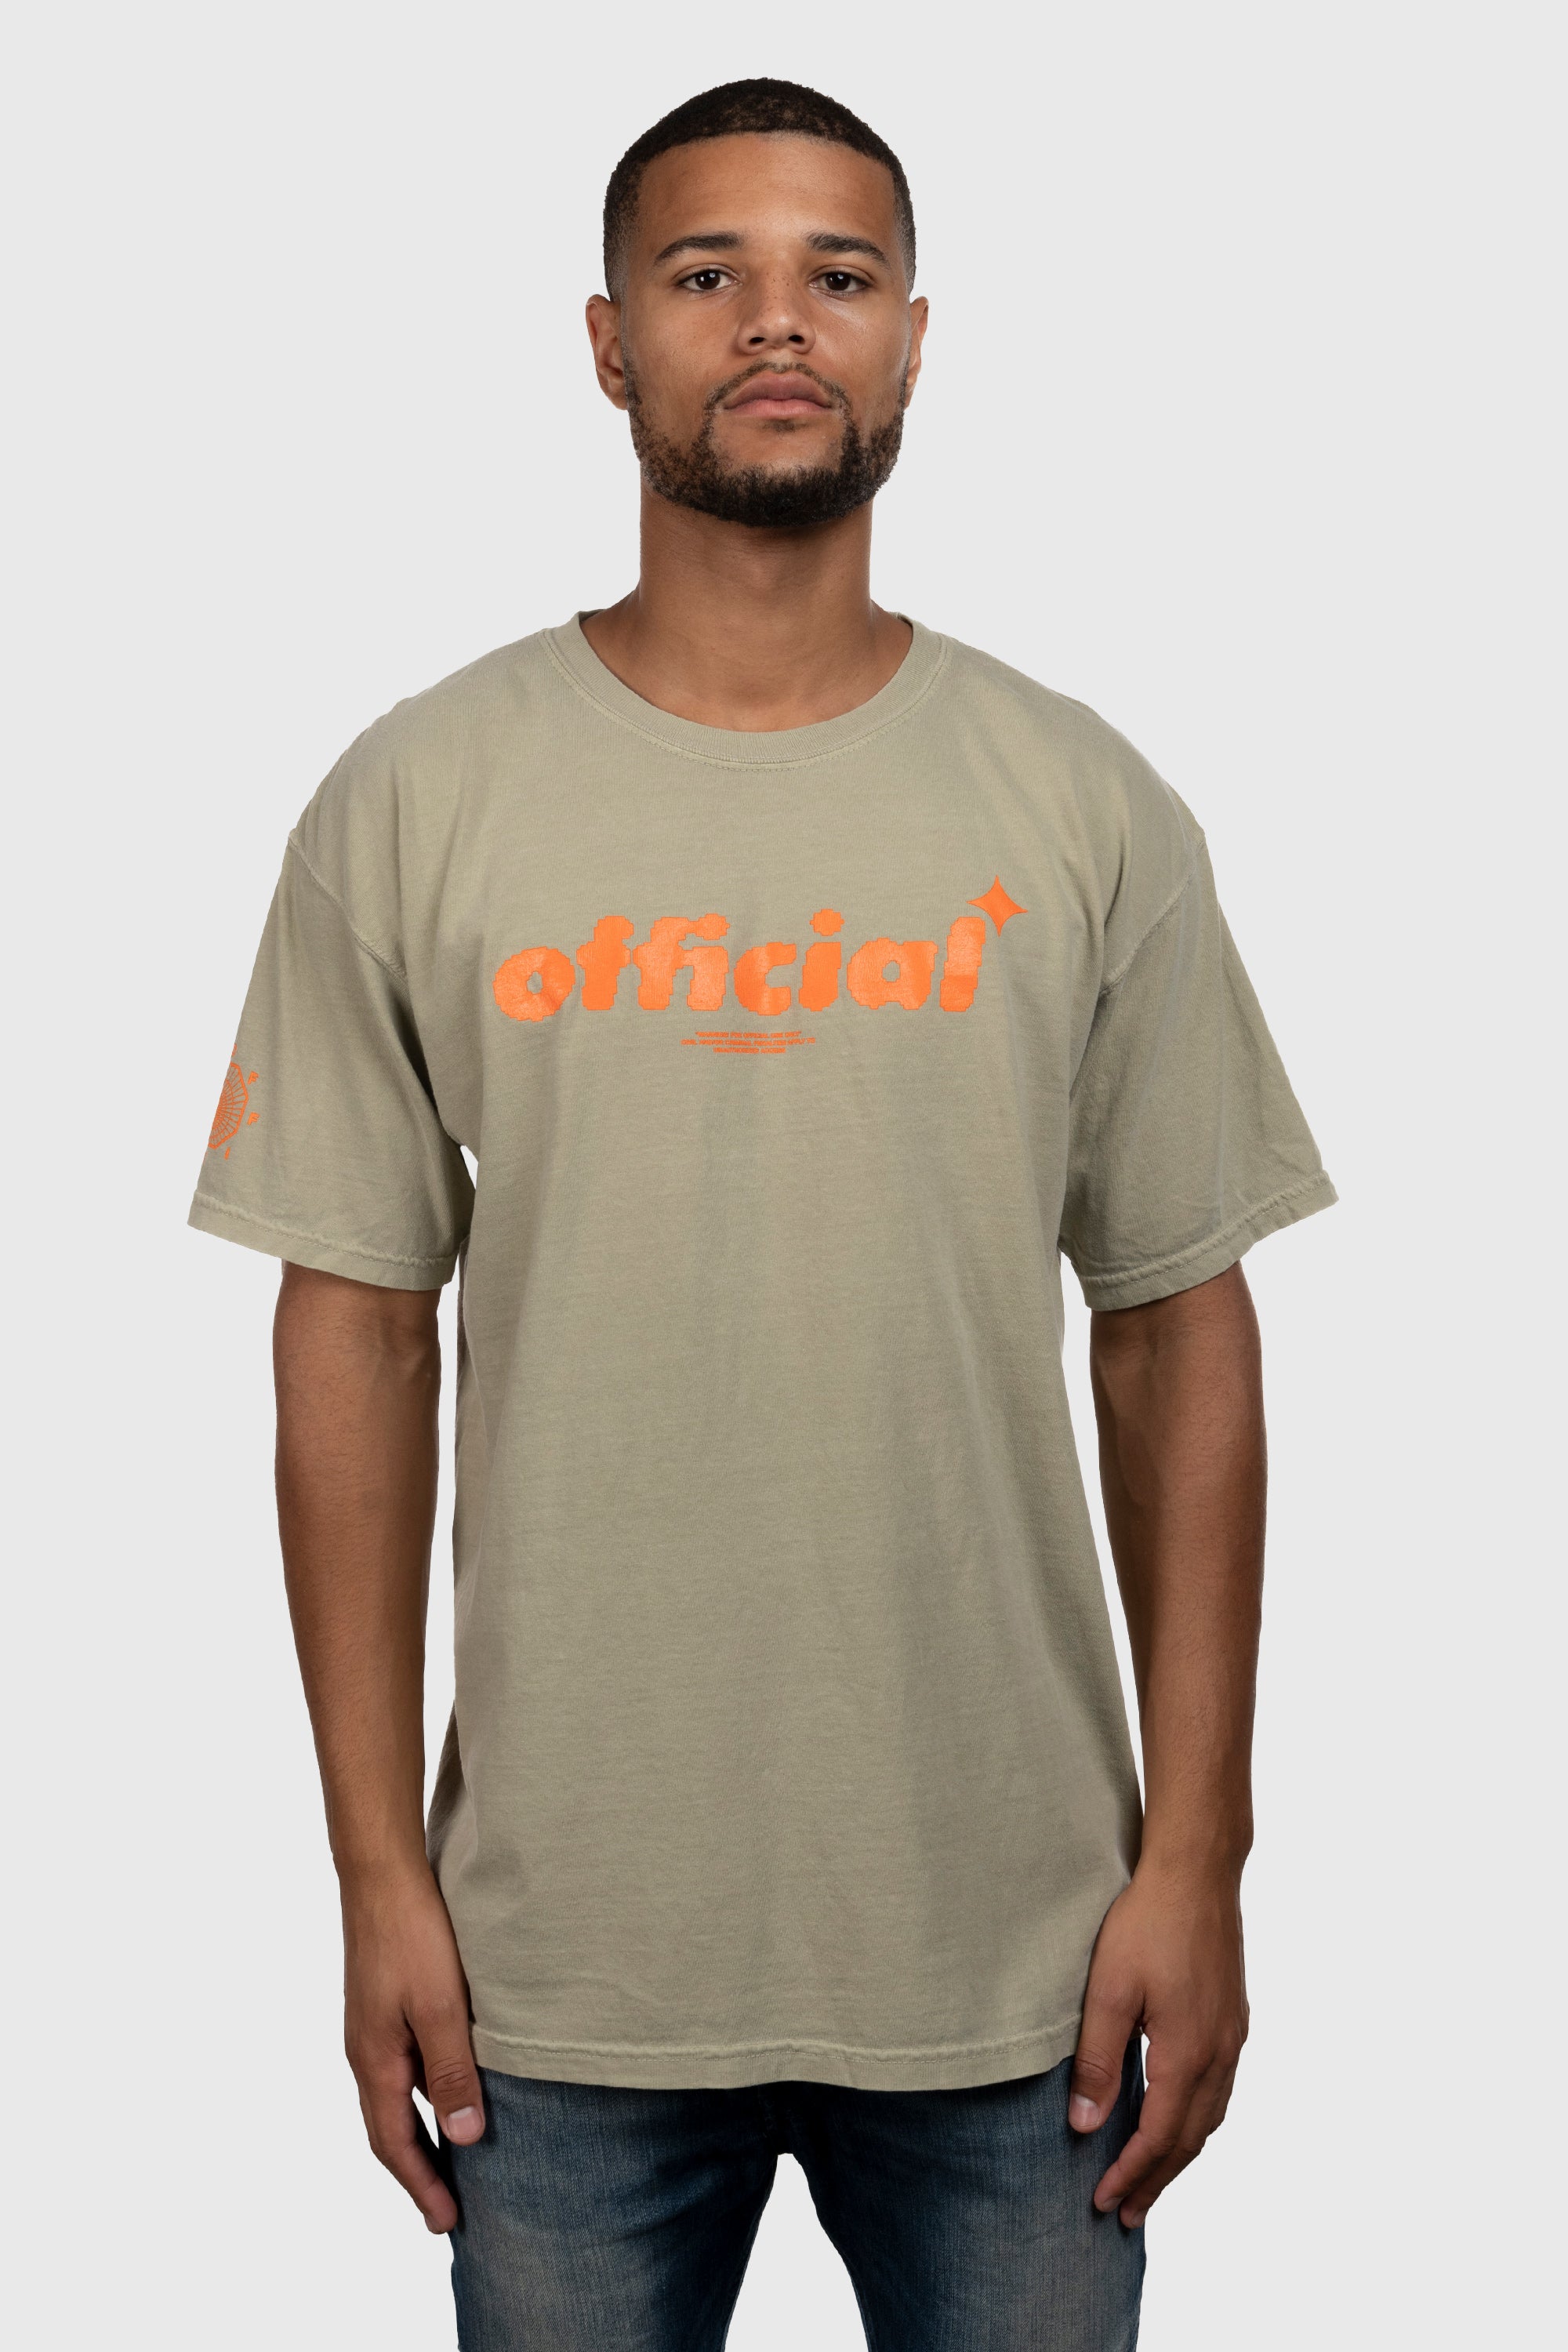 begå ristet brød ugunstige Identity Acquired T-Shirt (Khaki) - The Official Brand